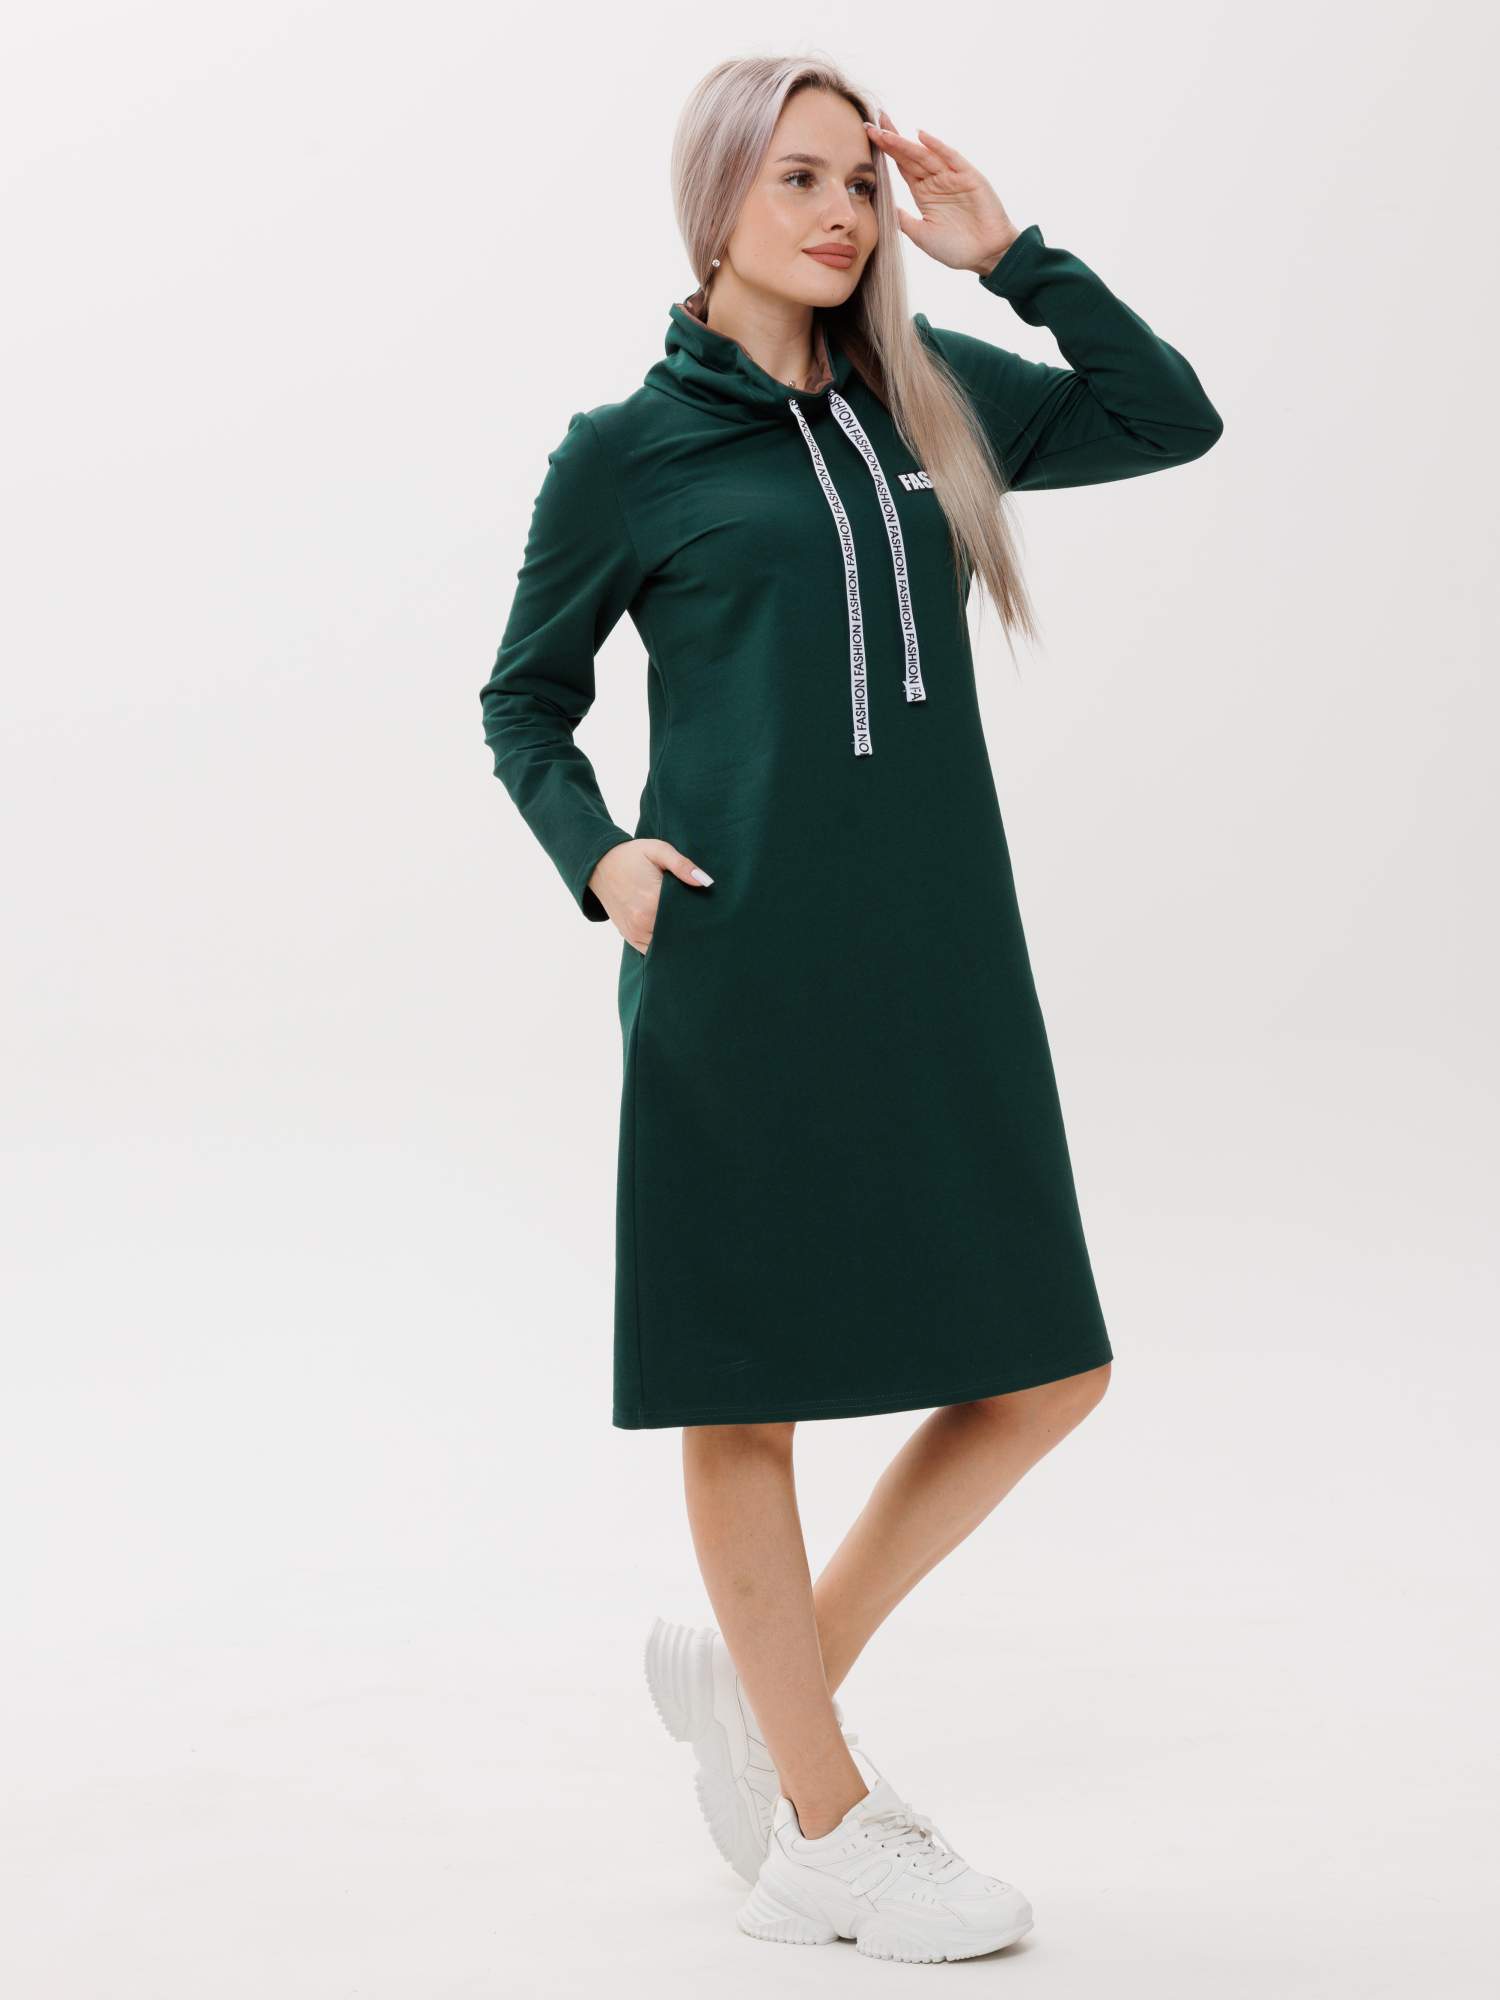 Платье женское ИП Салимзянова О.В П-120/1 зеленое 60 RU